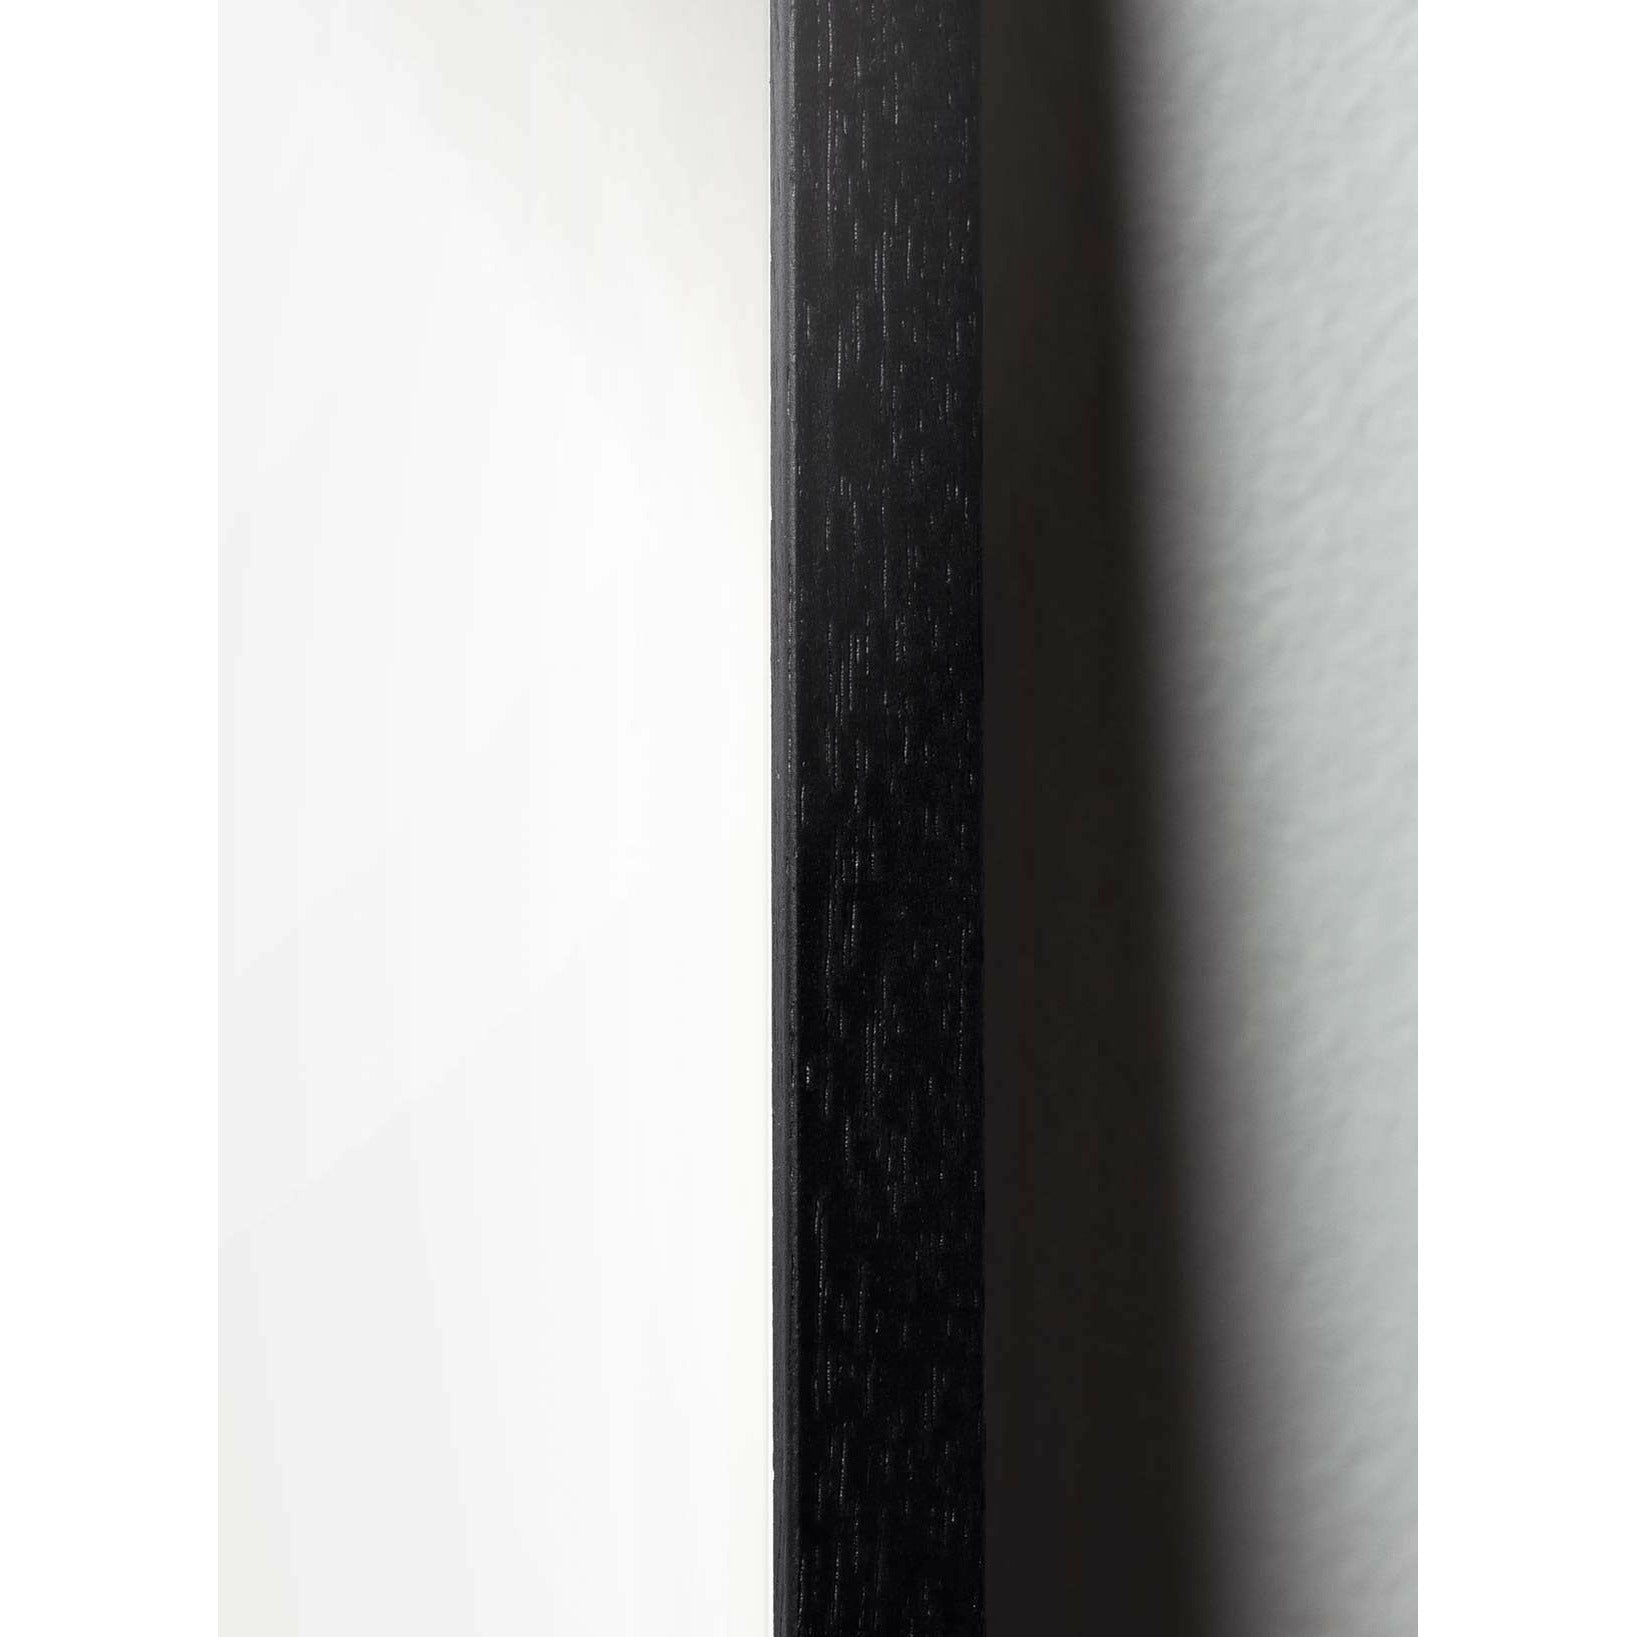 Brainchild Drop Line Poster, Rahmen aus schwarz lackiertem Holz 70x100 cm, weißer Hintergrund